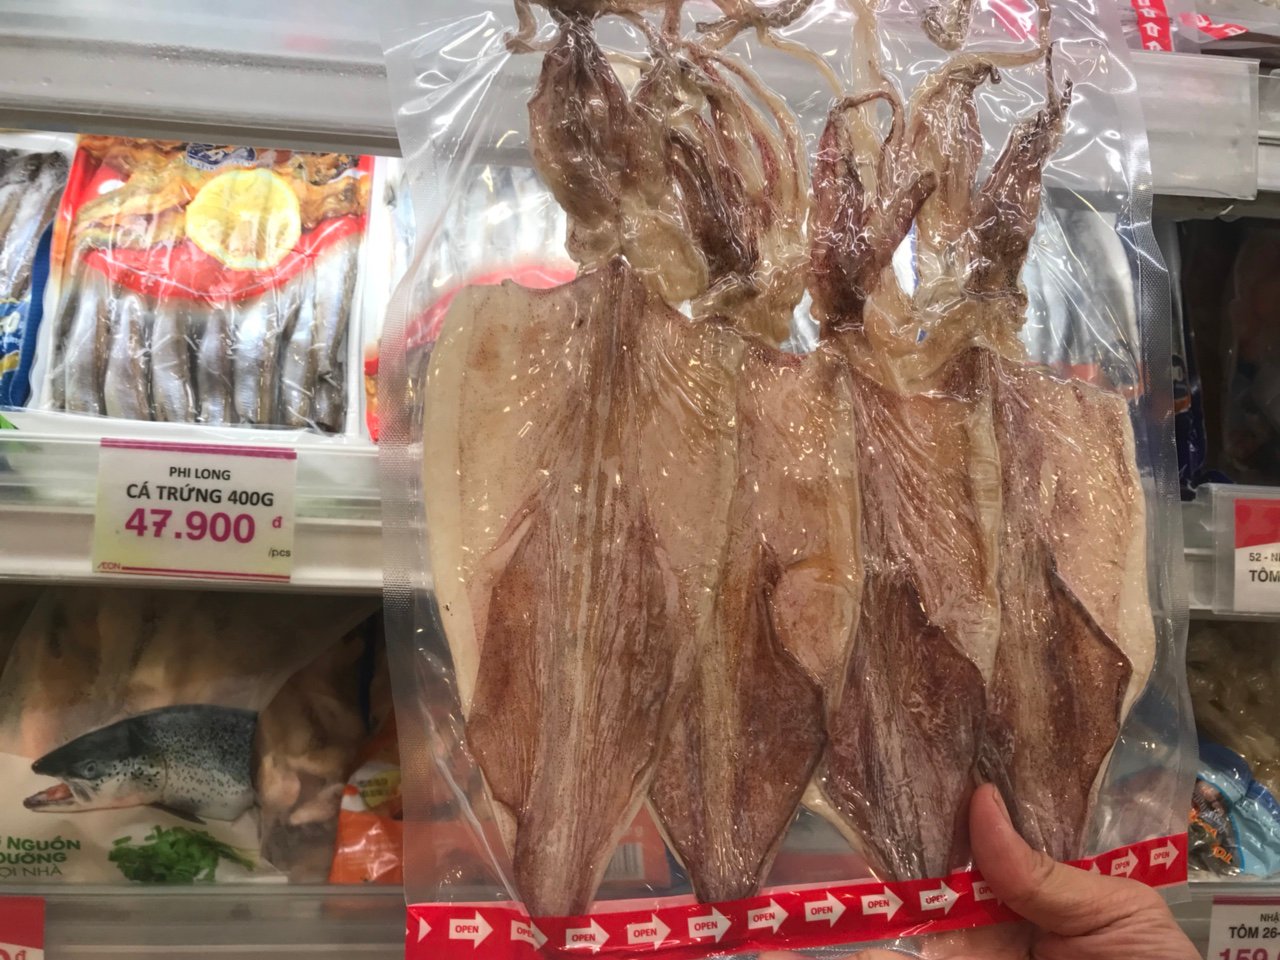 Mực khô bán trong siêu thị AeonMall